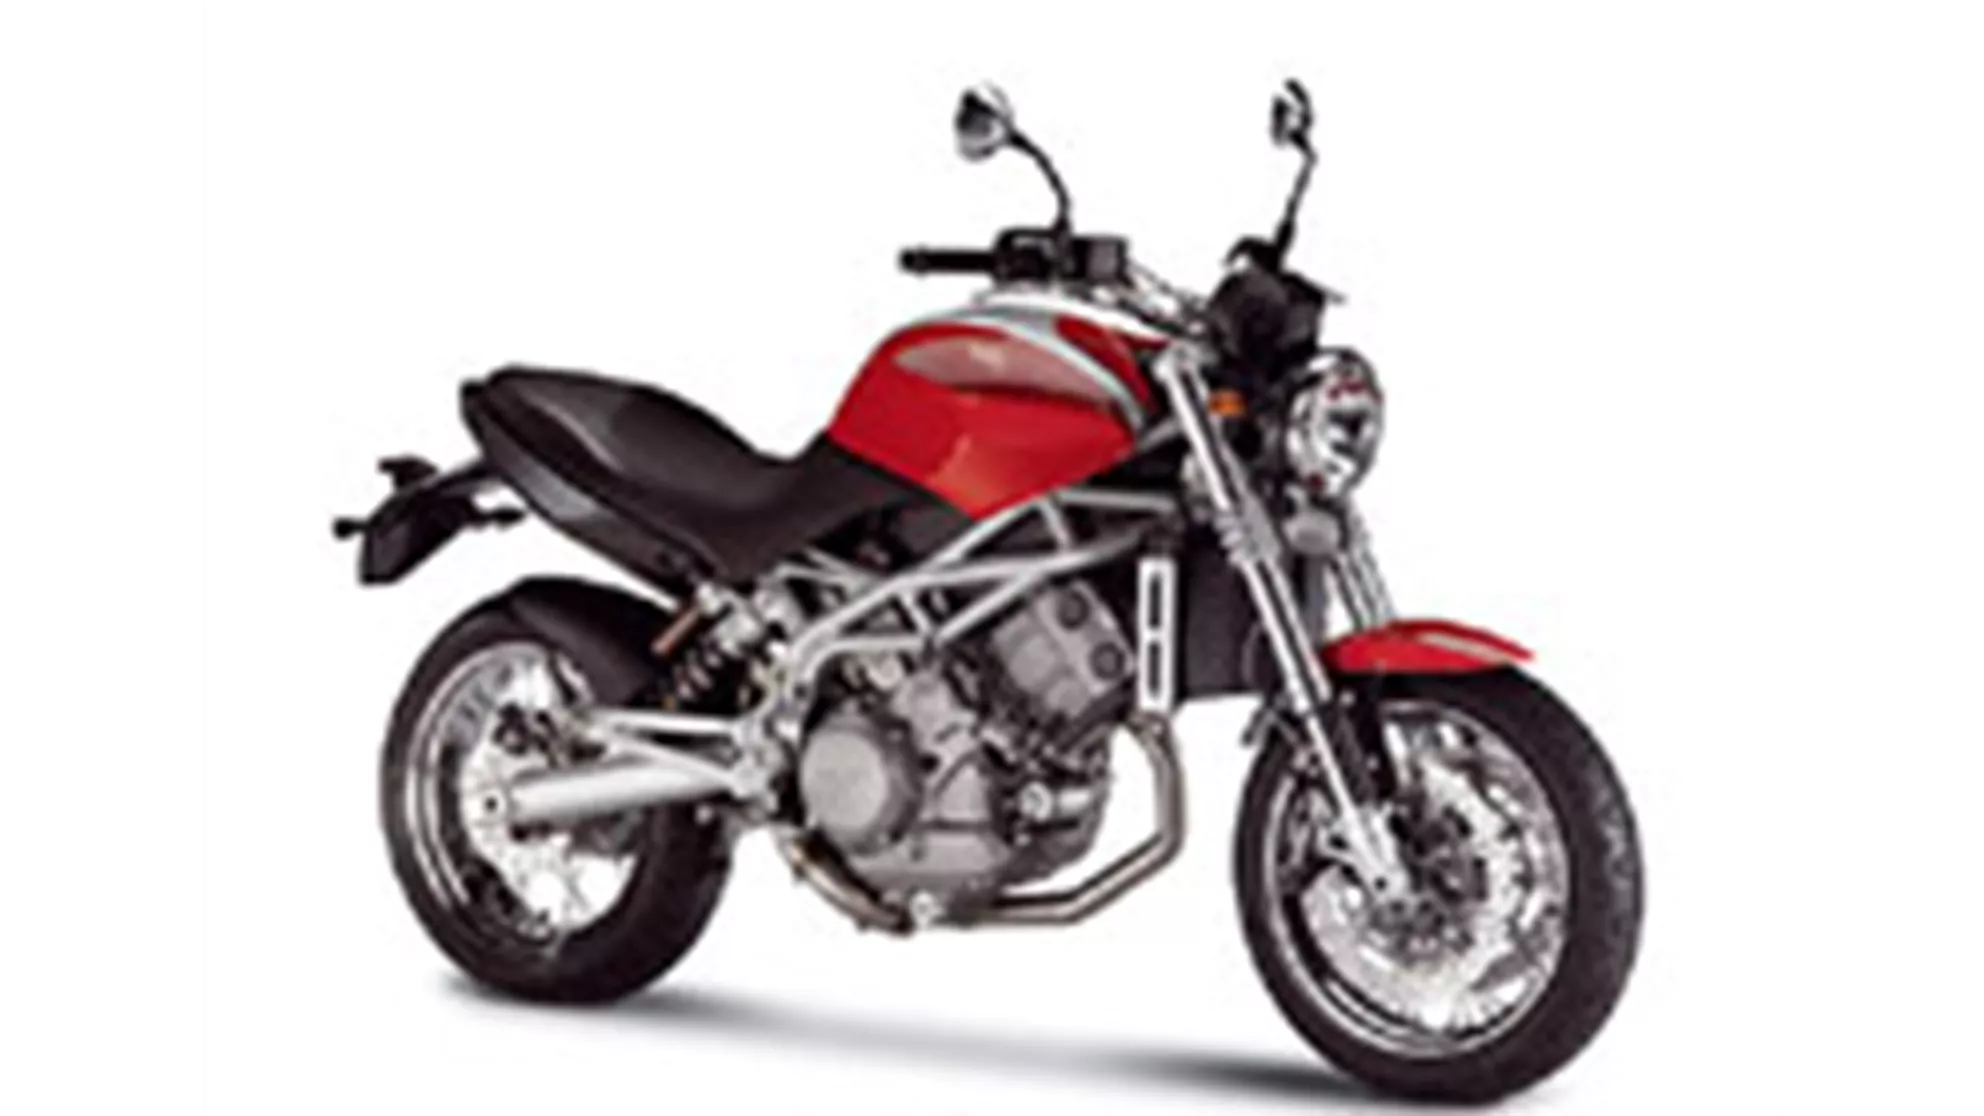 Moto Morini 9 1/2 1200 - Immagine 1